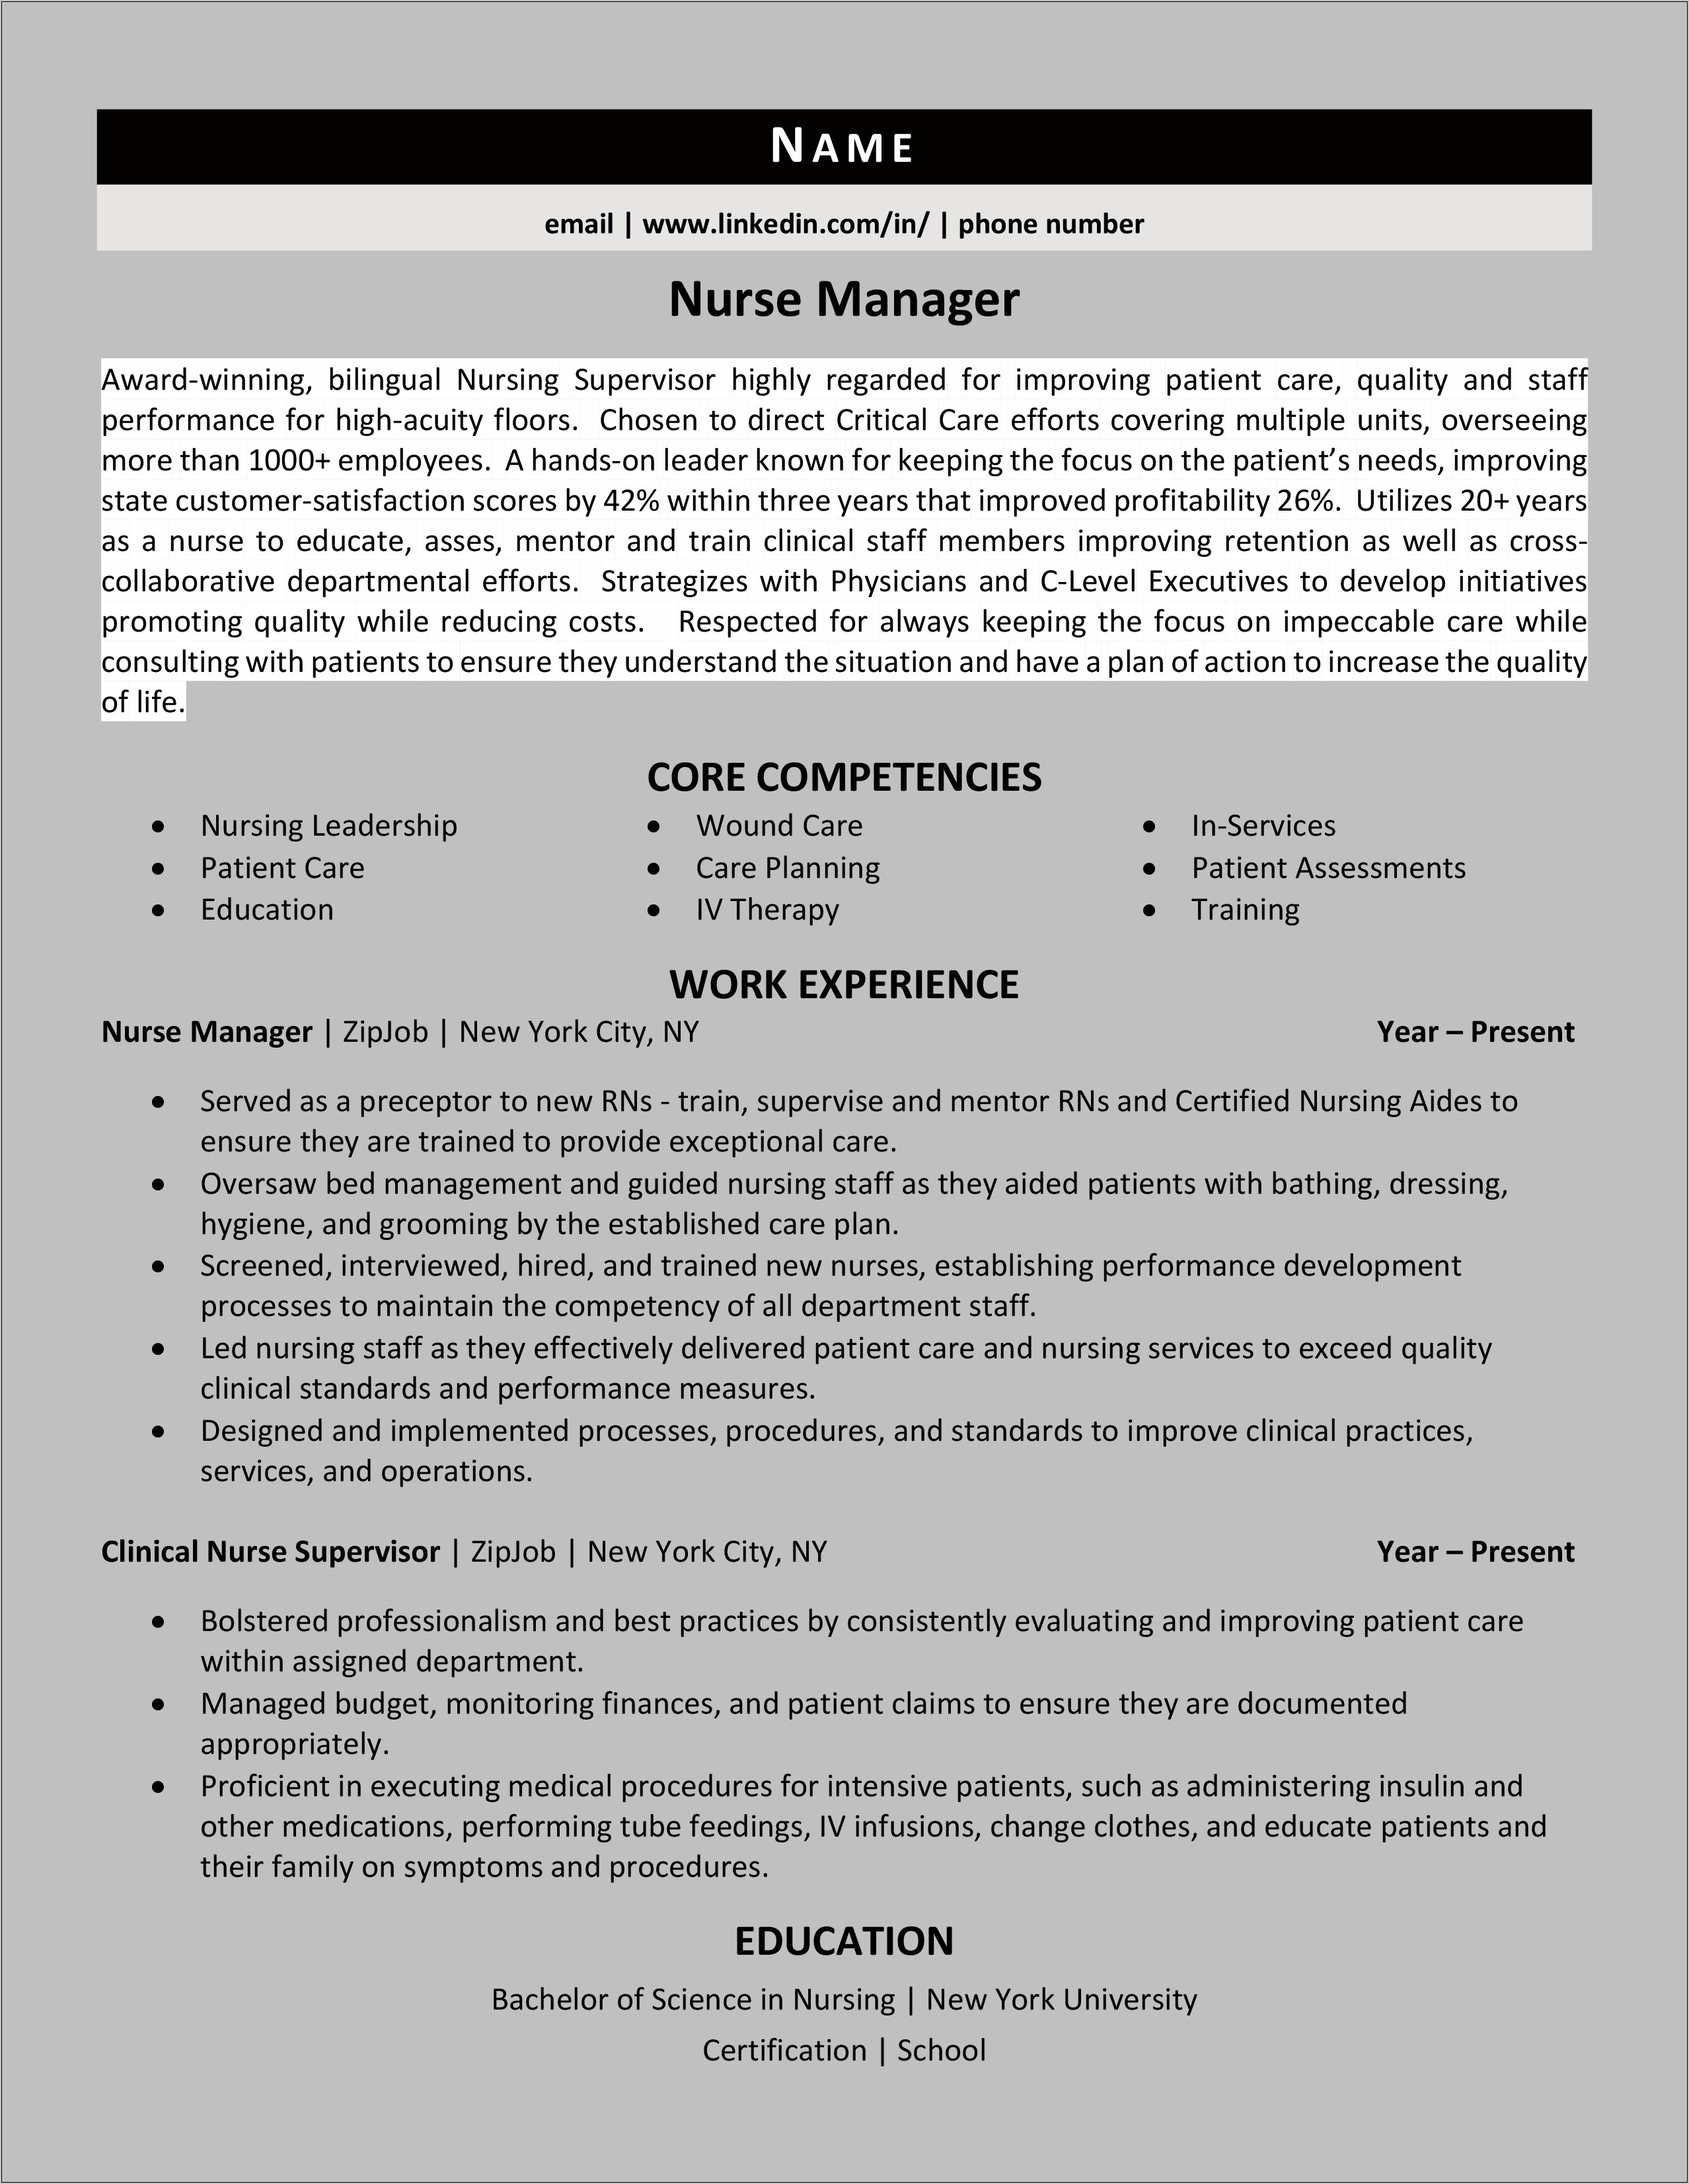 Resume Objective Statememt For Aquiring Nurse Mnager Position